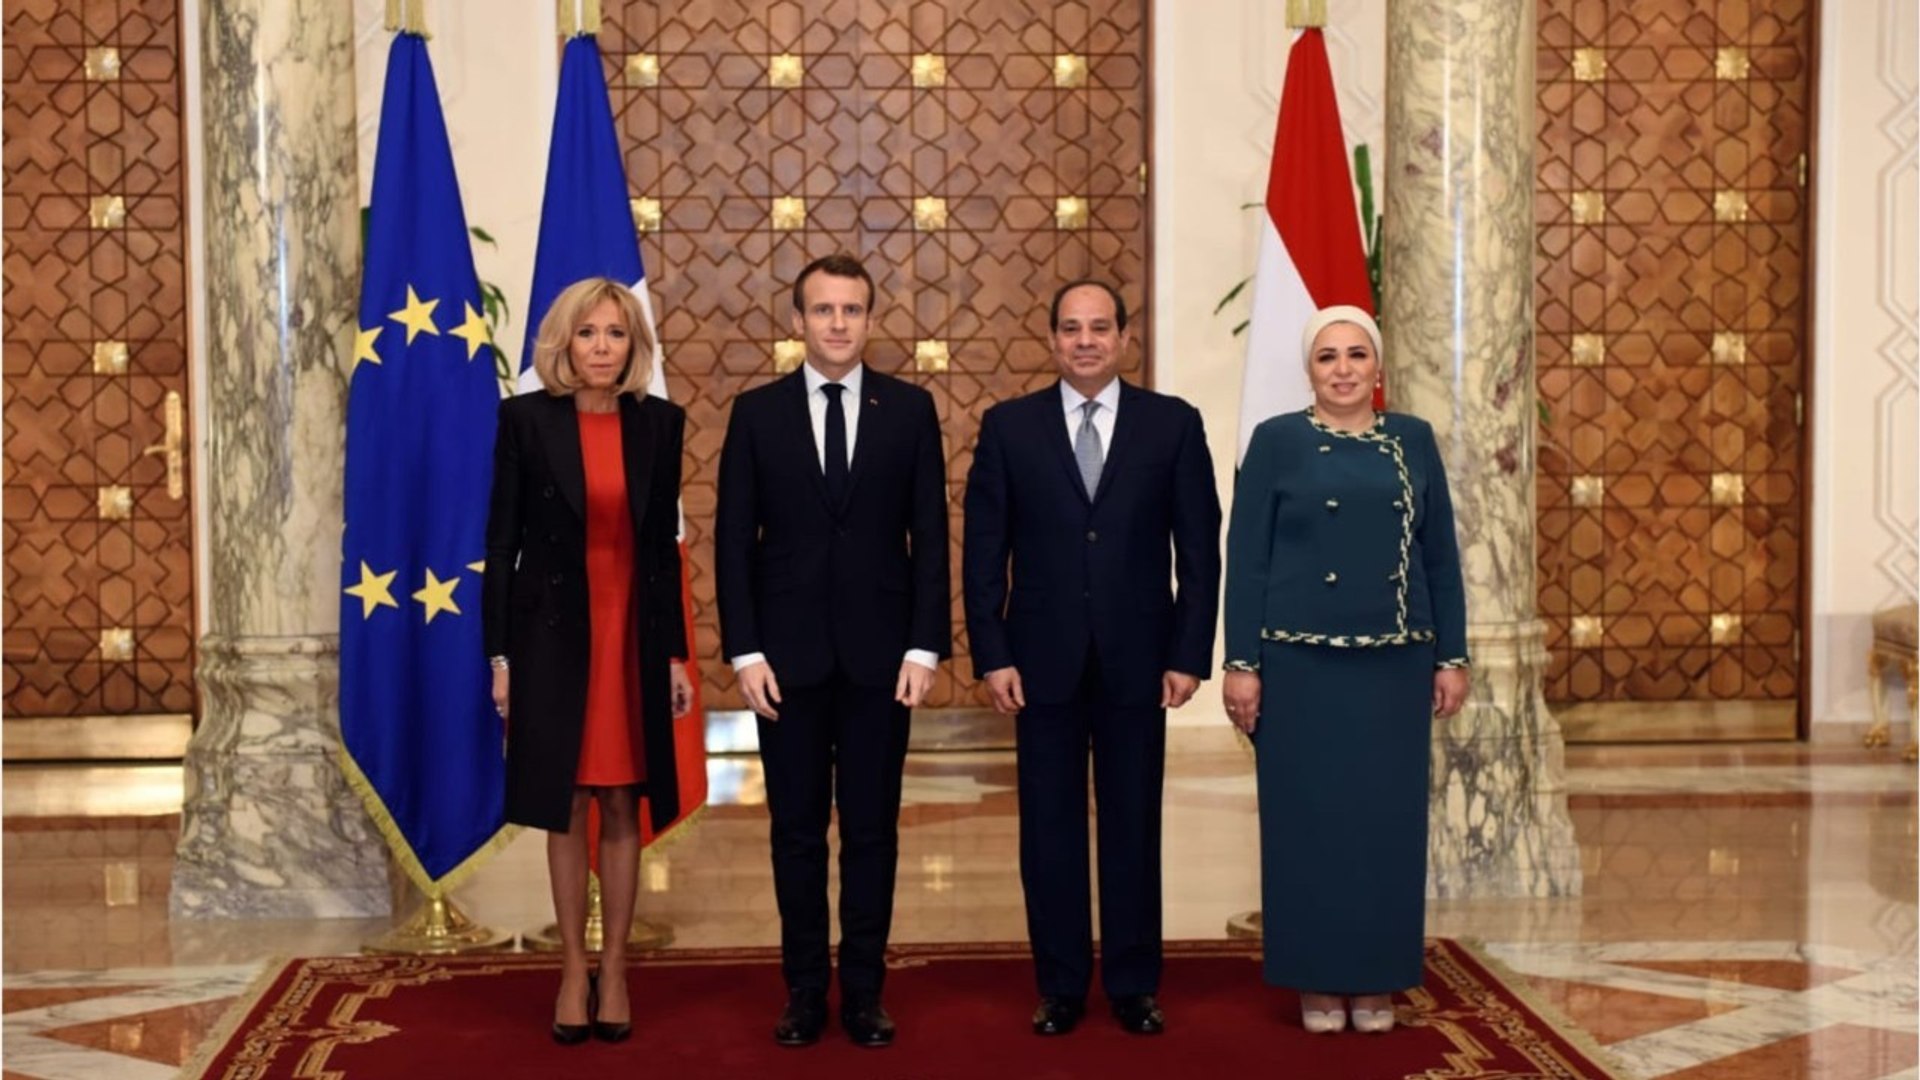 Les baskets dorées Vuitton de Brigitte Macron en Égypte font polémique -  Vidéo Dailymotion